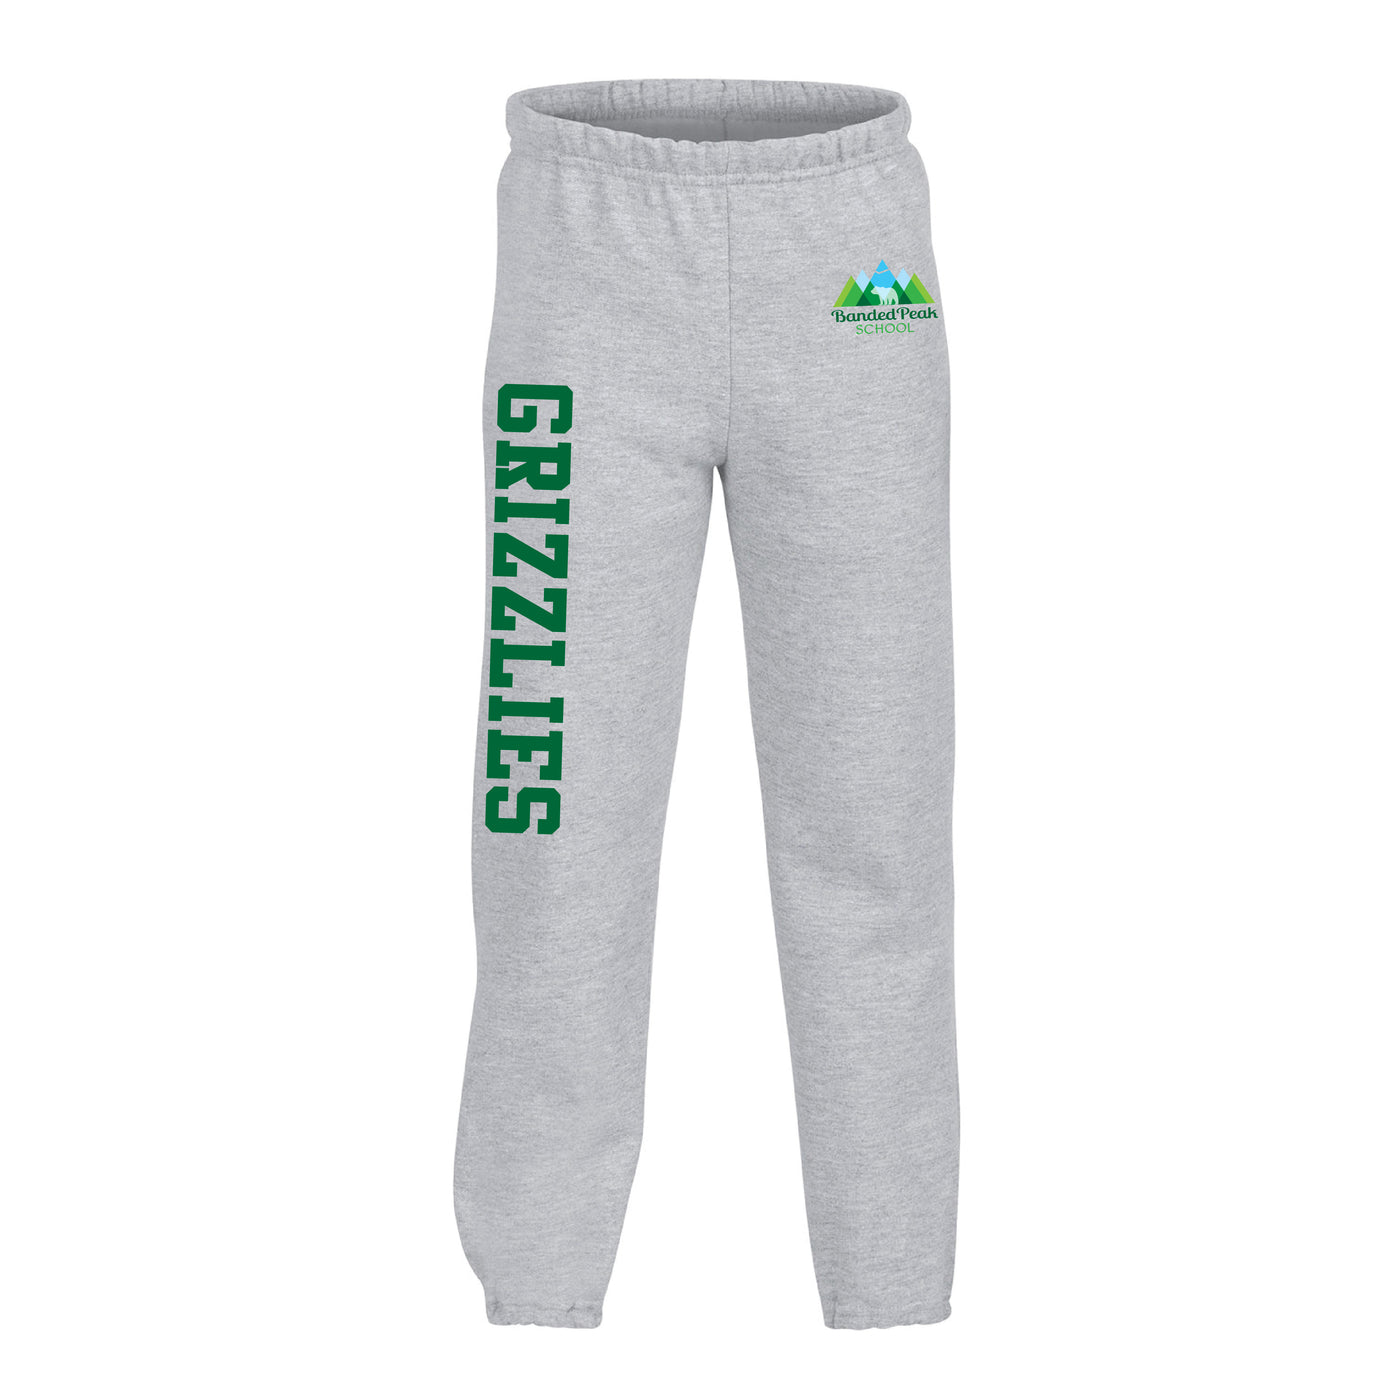 Banded Peak School - Pantalon de survêtement avec logo pour jeunes (Gris)